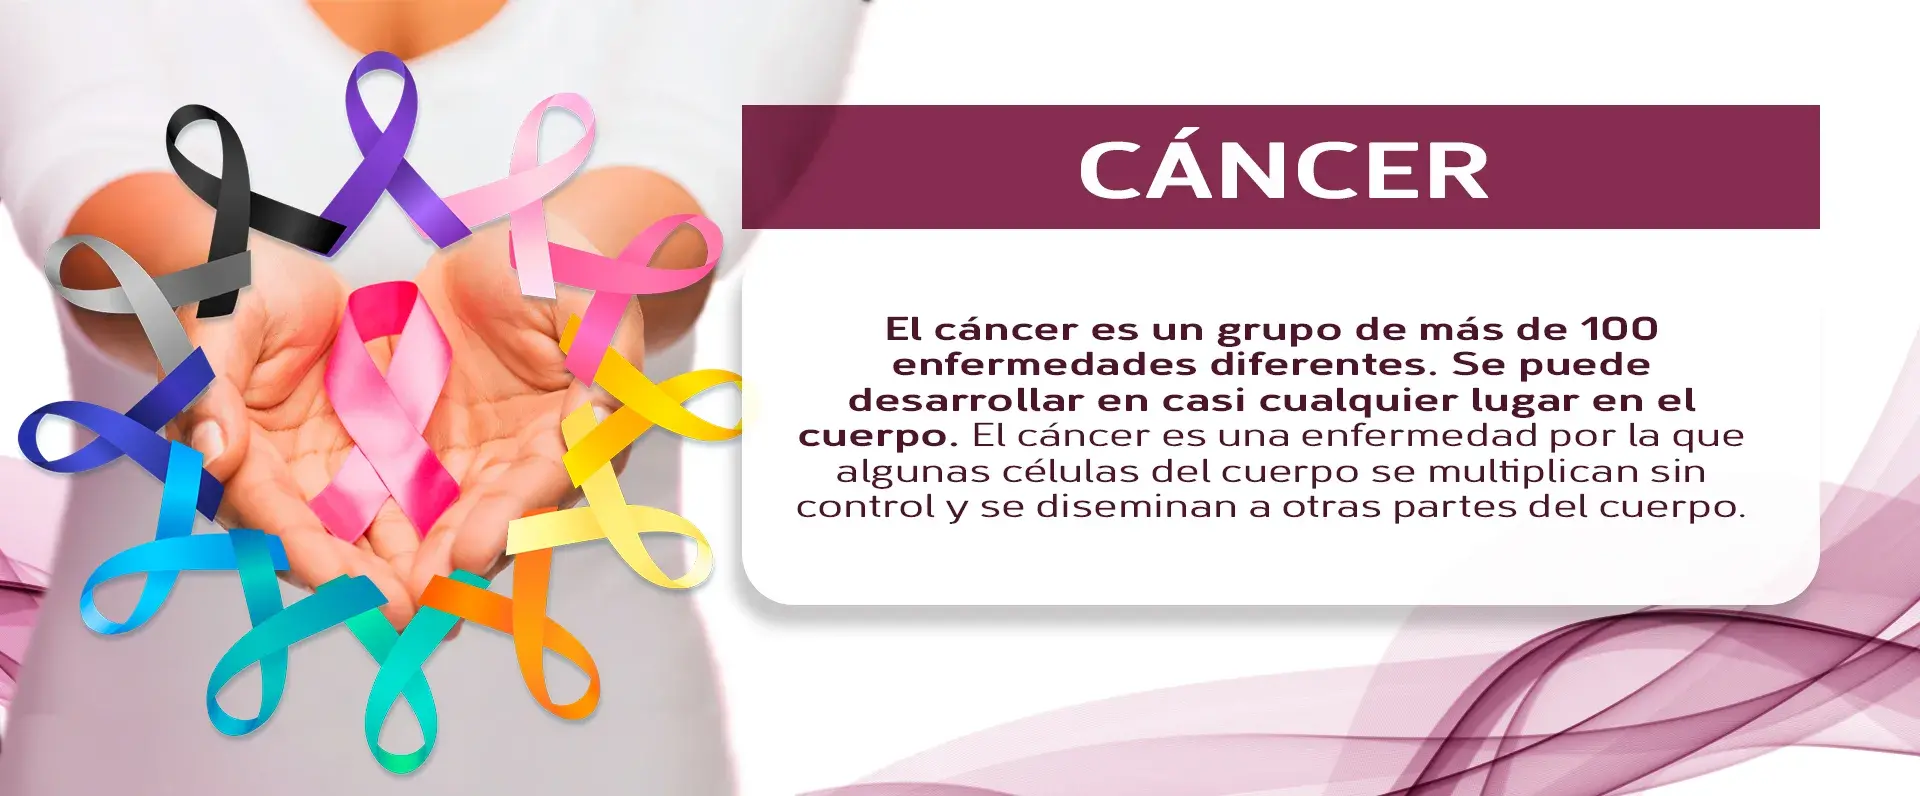 El cáncer es considerado como un grupo de enfermedades porque se da en varias partes del cuerpo.s